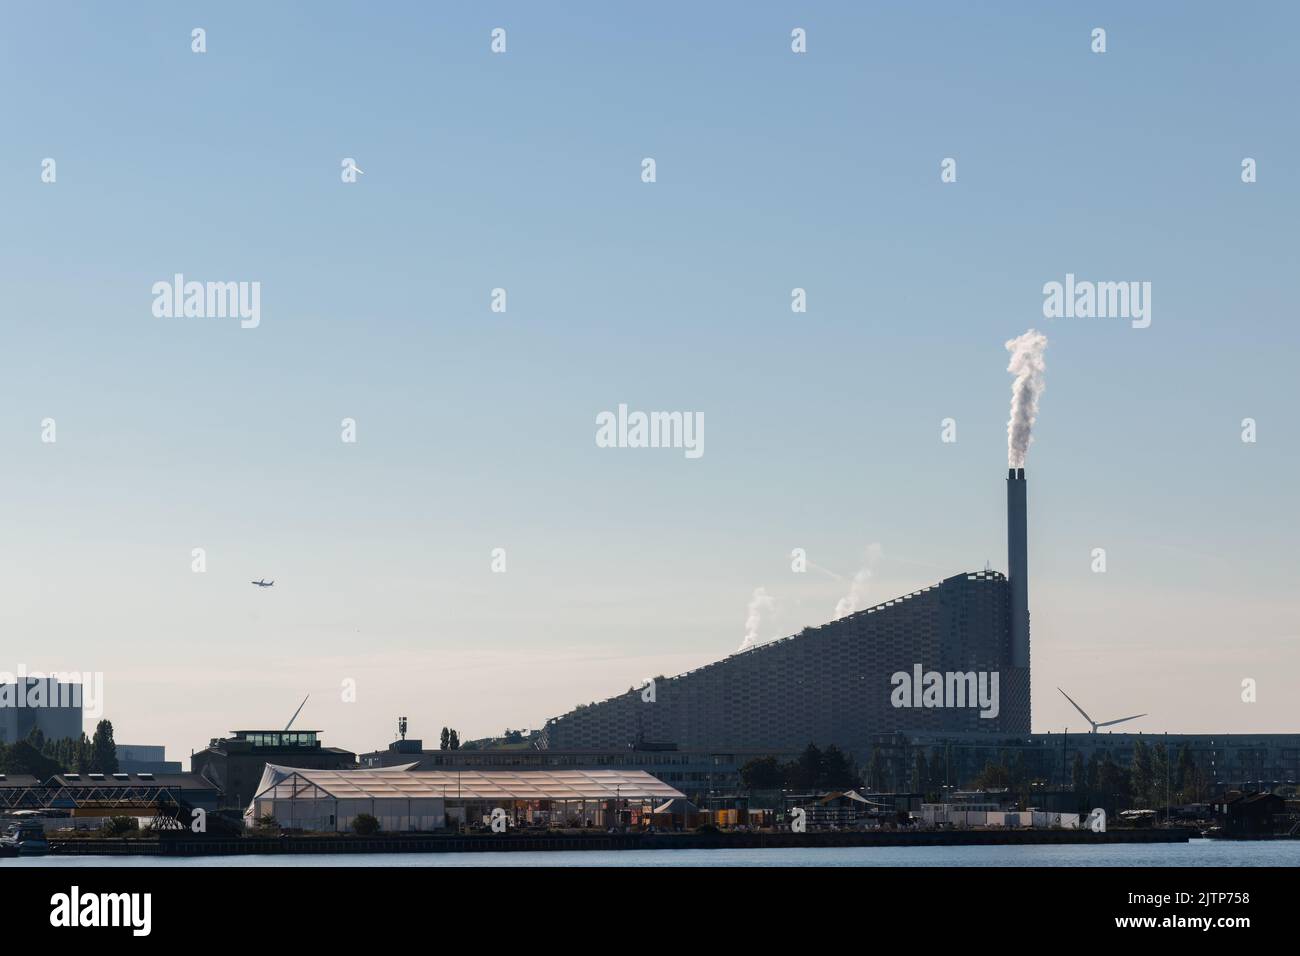 Kopenhagen, Dänemark. 13. August 2022. Amager Bakke, ein kombiniertes Kraftwerk und eine Skipiste von der anderen Seite des Flusses aus gesehen, gegen einen blauen Himmel. Stockfoto